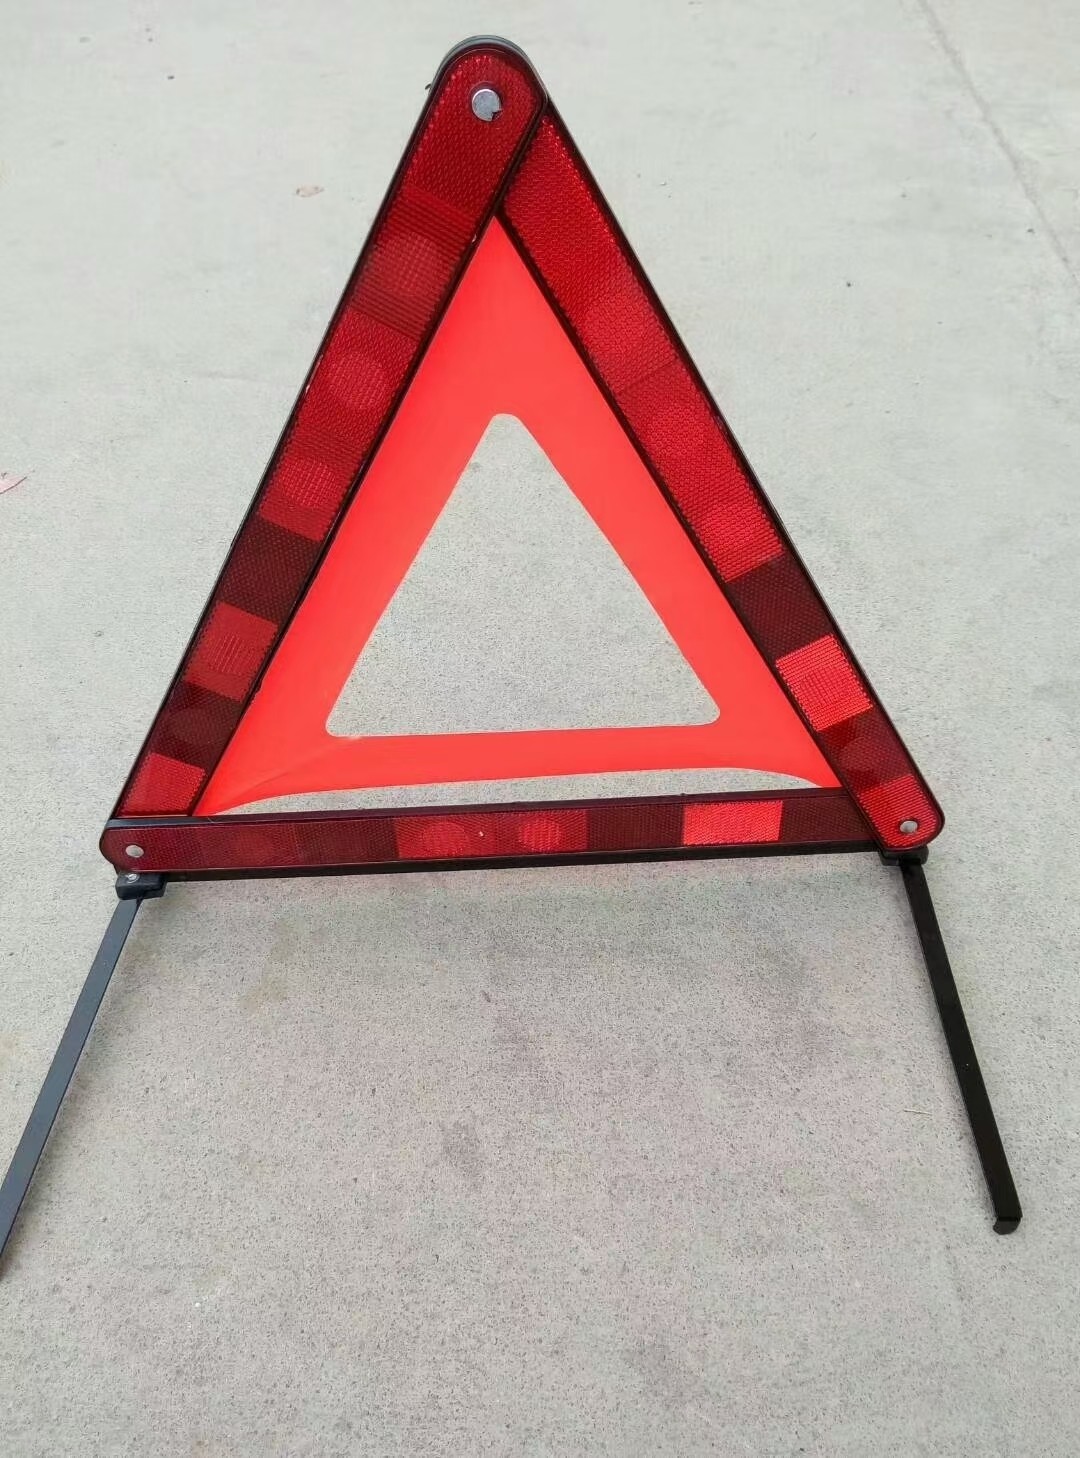 国产普通 汽车三角架警示牌车用反光折叠式停车安全应急救援标志三角架-国产